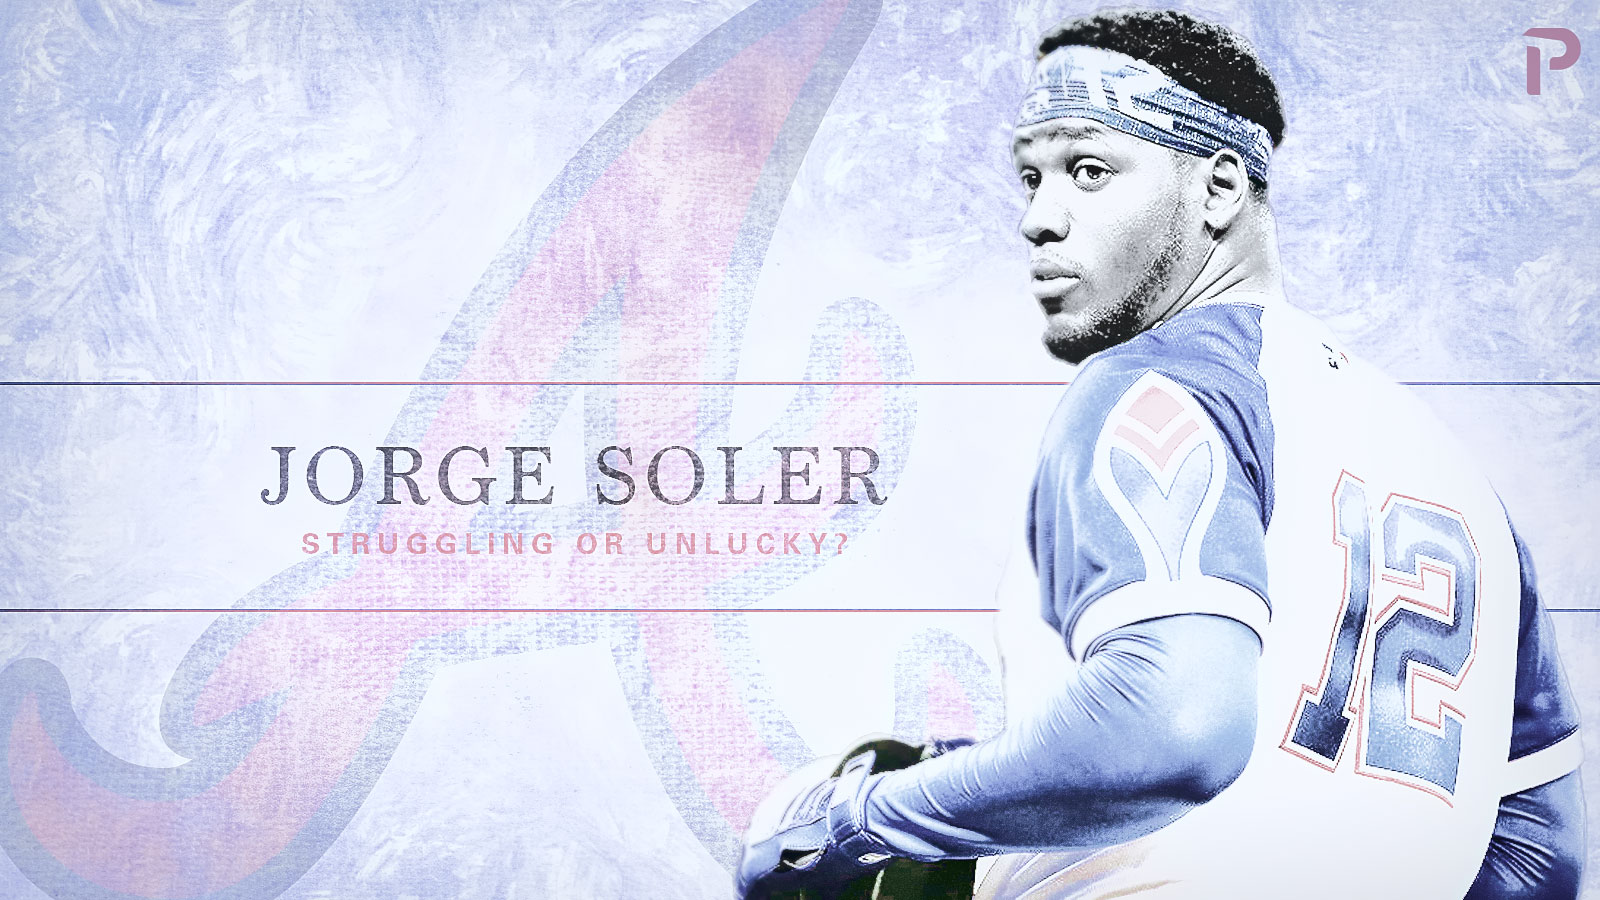 Jorge Soler: Struggling or Unlucky?